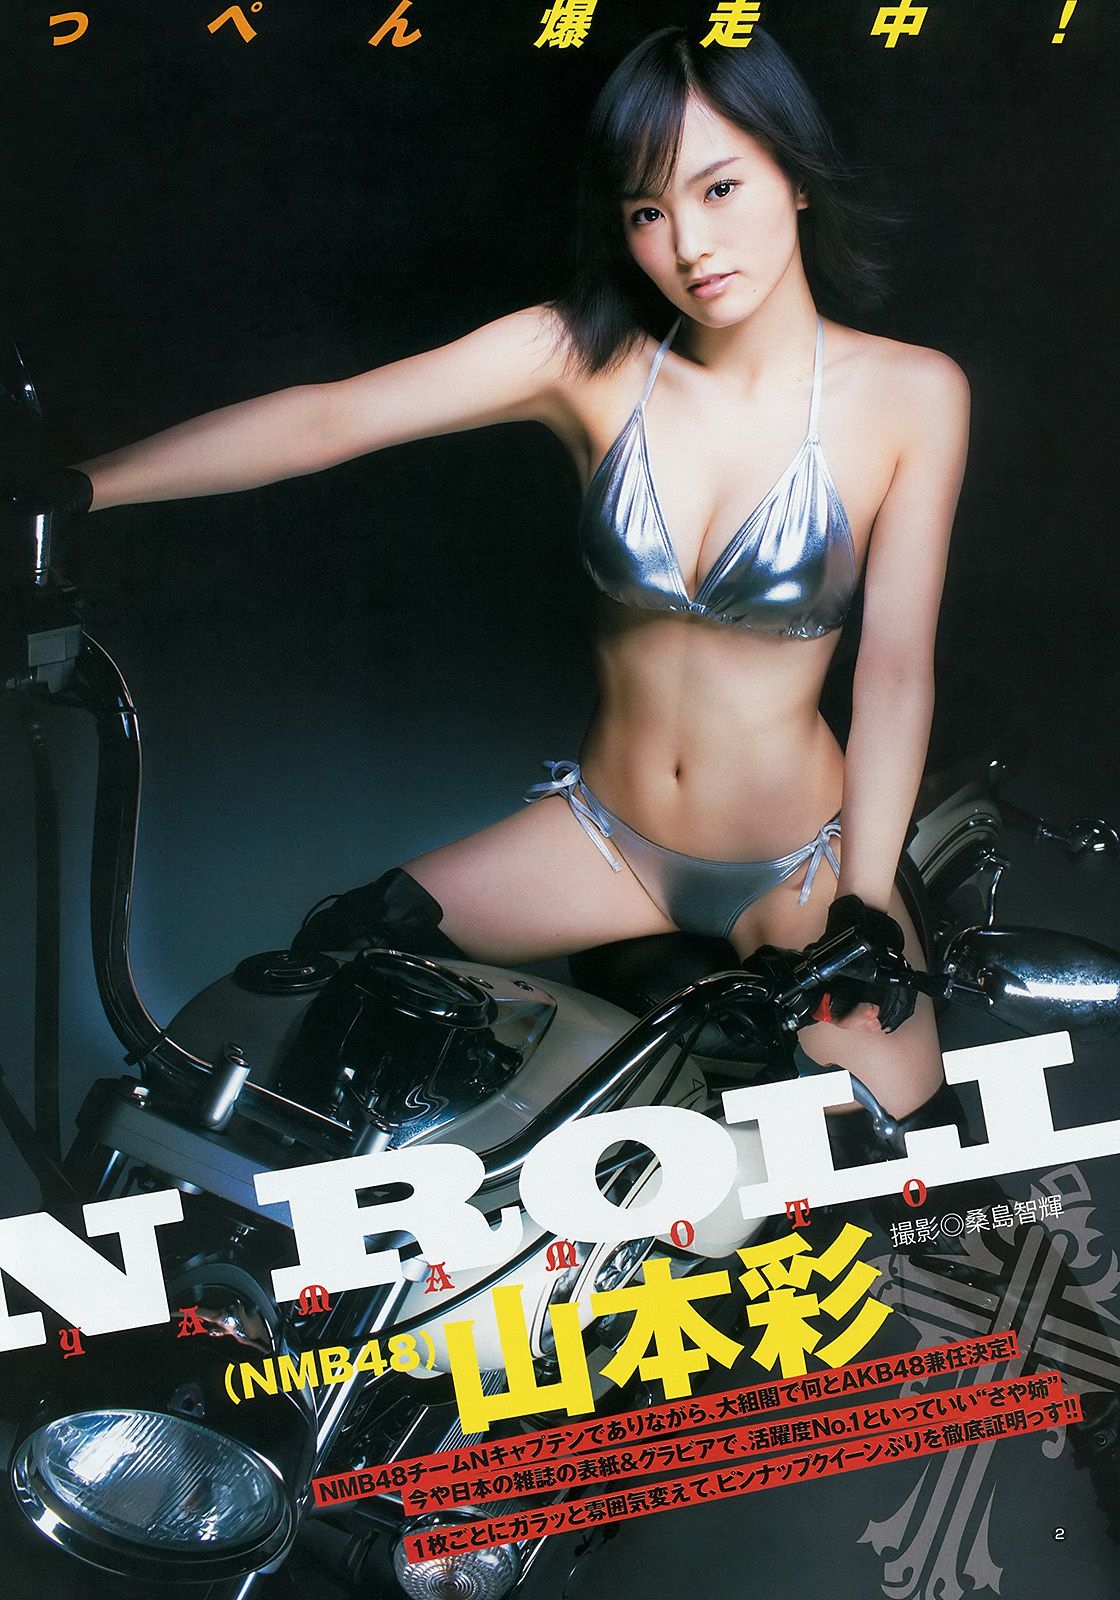 山本彩 48グループ 久慈暁子 [Weekly Young Jump] 2014年No.17 写真杂志 